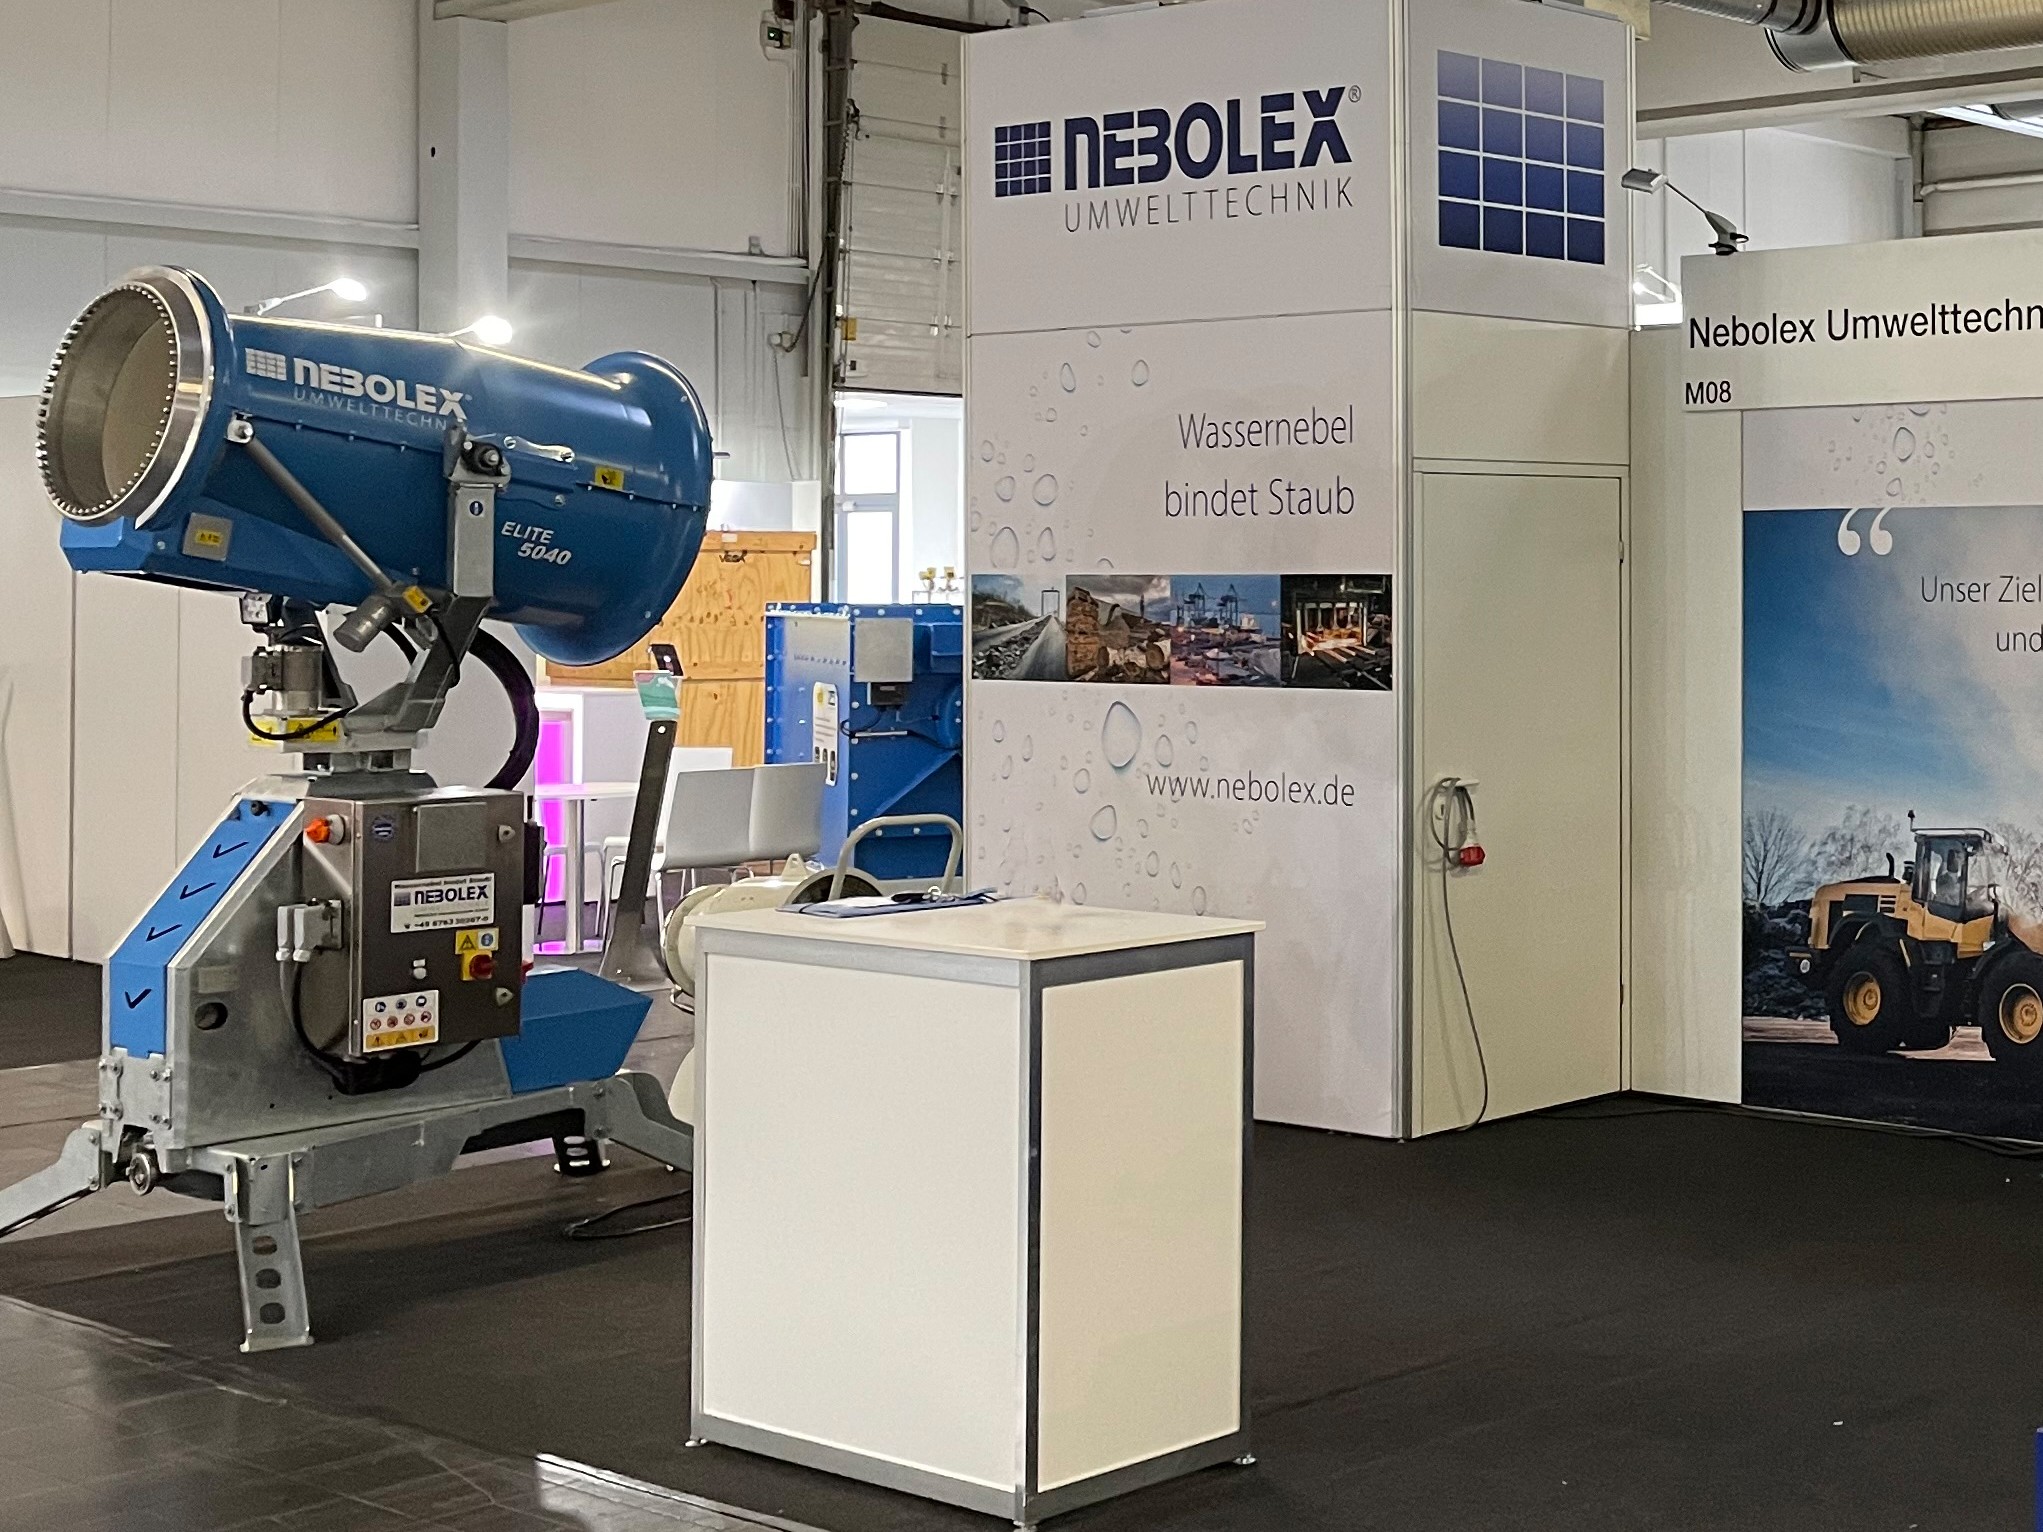 Staubbindemaschine auf dem Messestand der Firma Nebolex Umwelttechnik in München.